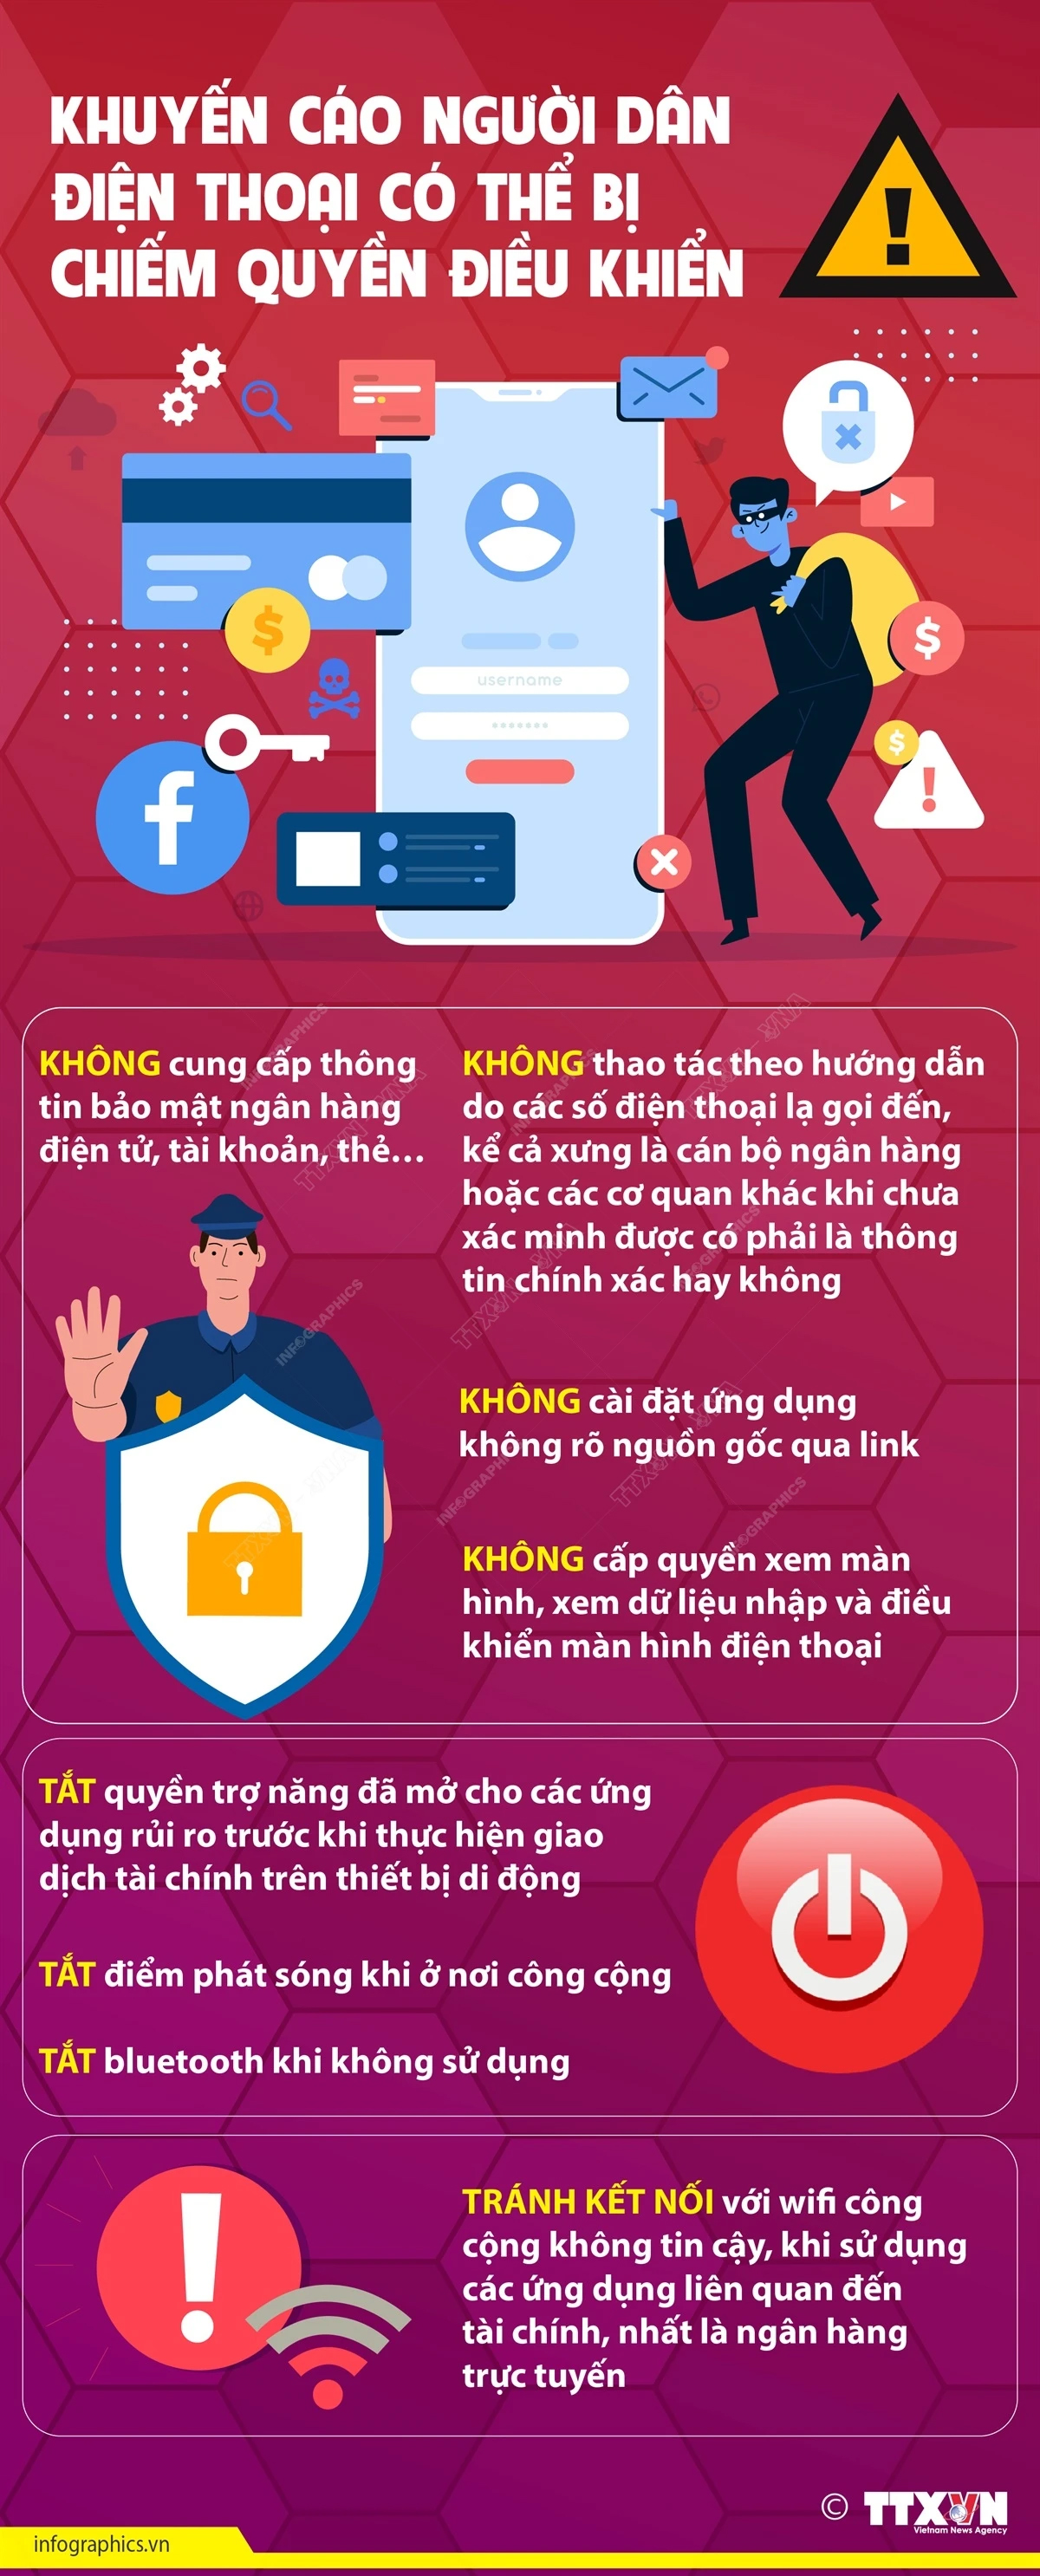 Infographics Người dân cần cảnh giác tránh để điện thoại bị chiếm quyền sử dụng